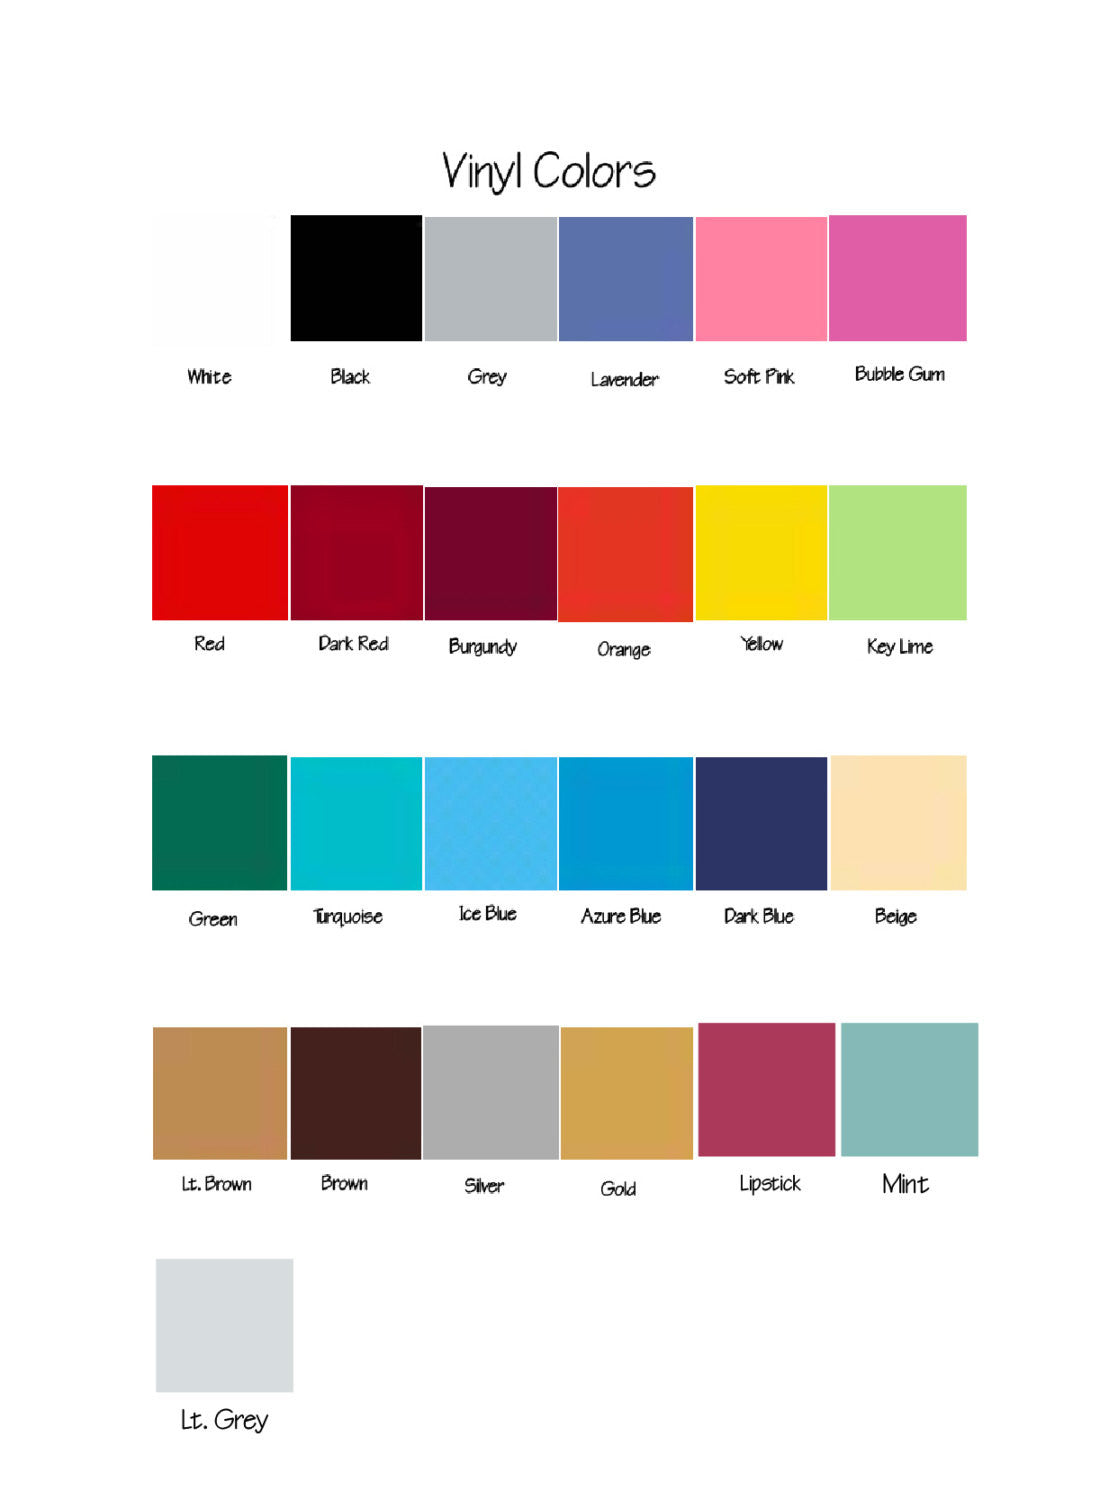 Color Names on Paint Splats